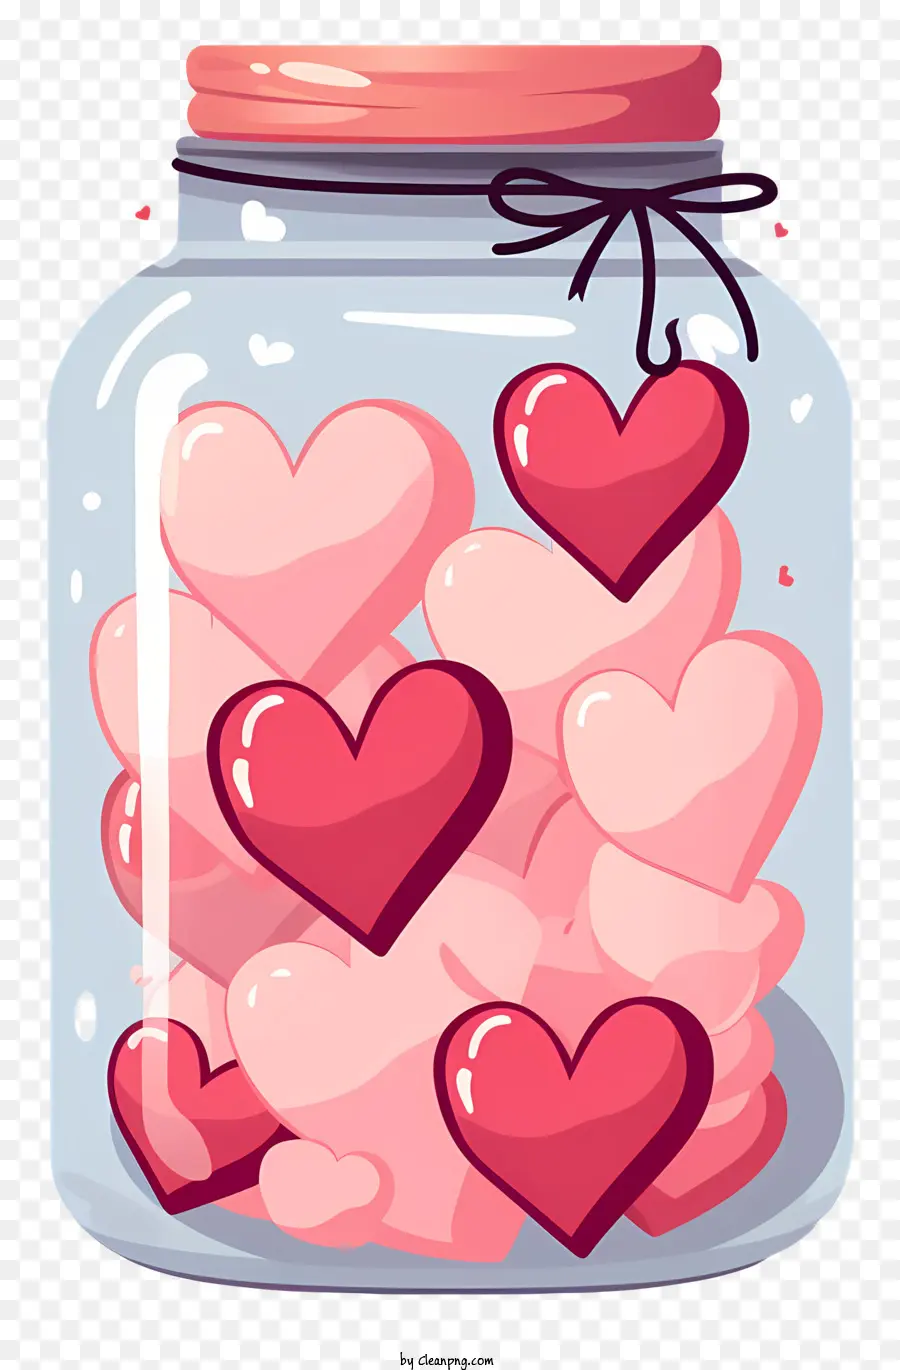 MASON JAR HERZUGEM JAR PINK UND ROTE HEARTEN JAR-Dekoration Valentinstag Geschenk - Glas des Herzens mit Band auf schwarzem Hintergrund